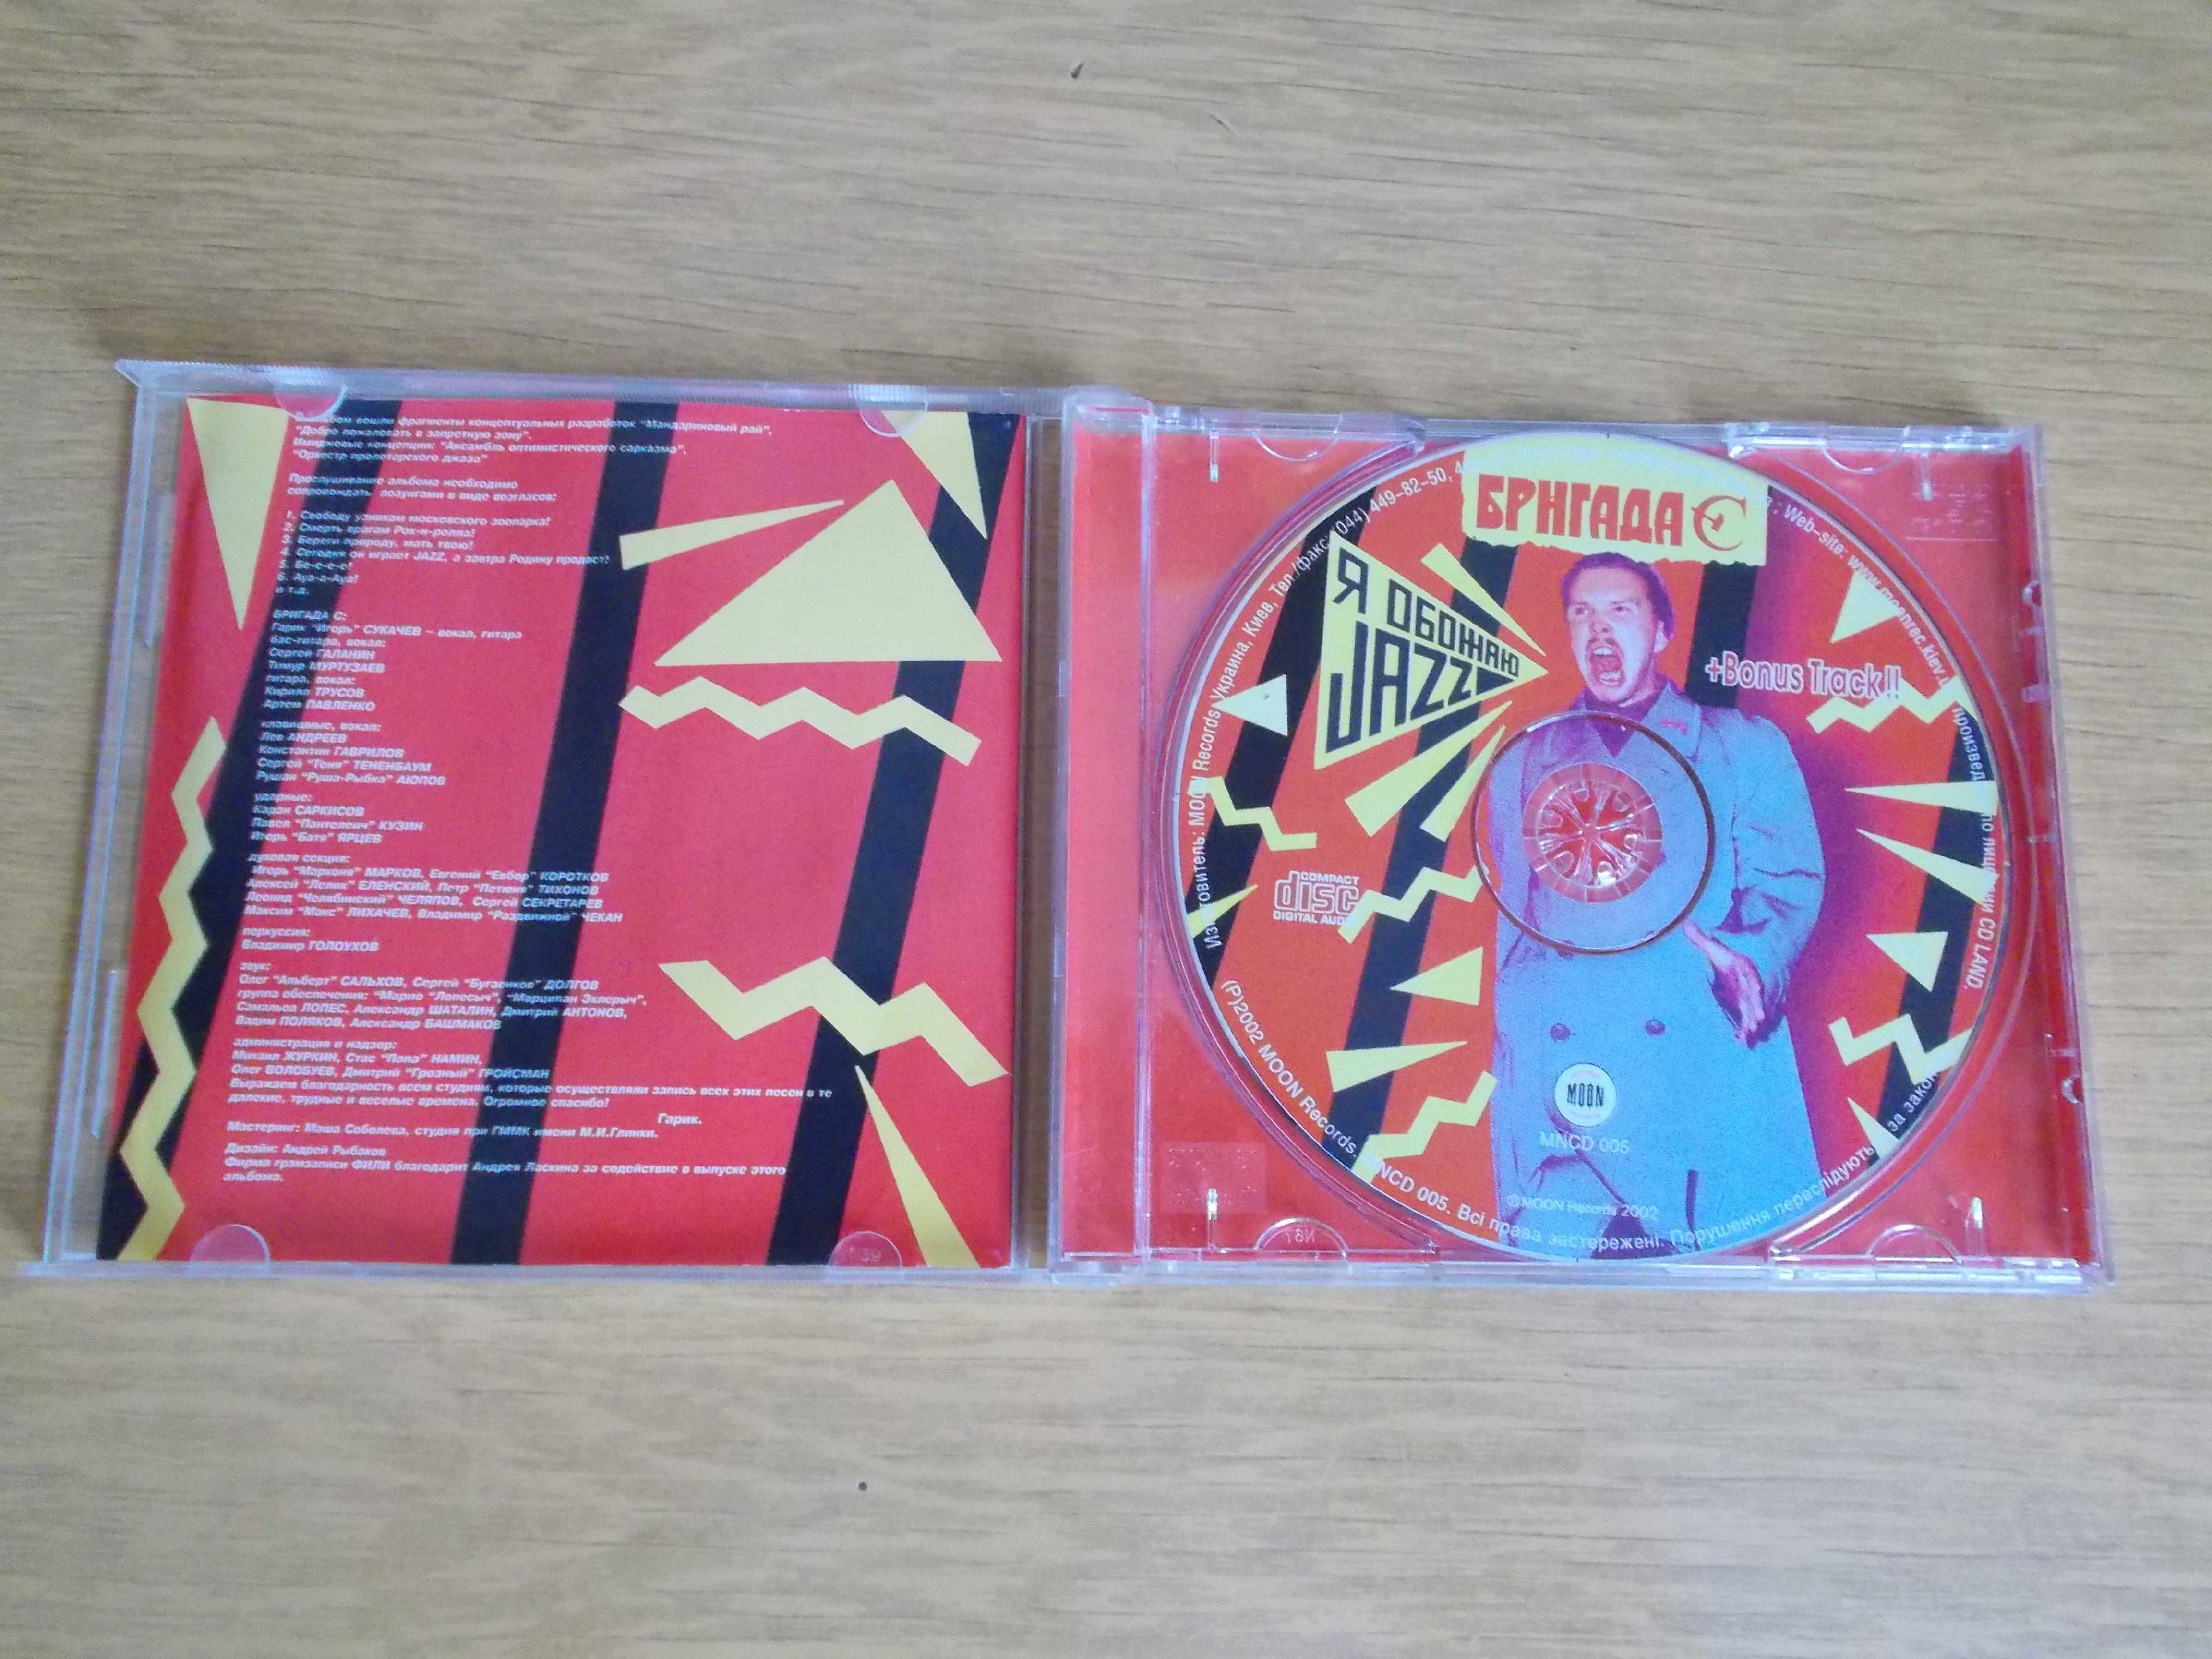 Бригада С "Я Обожаю Jazz". CD-диск.